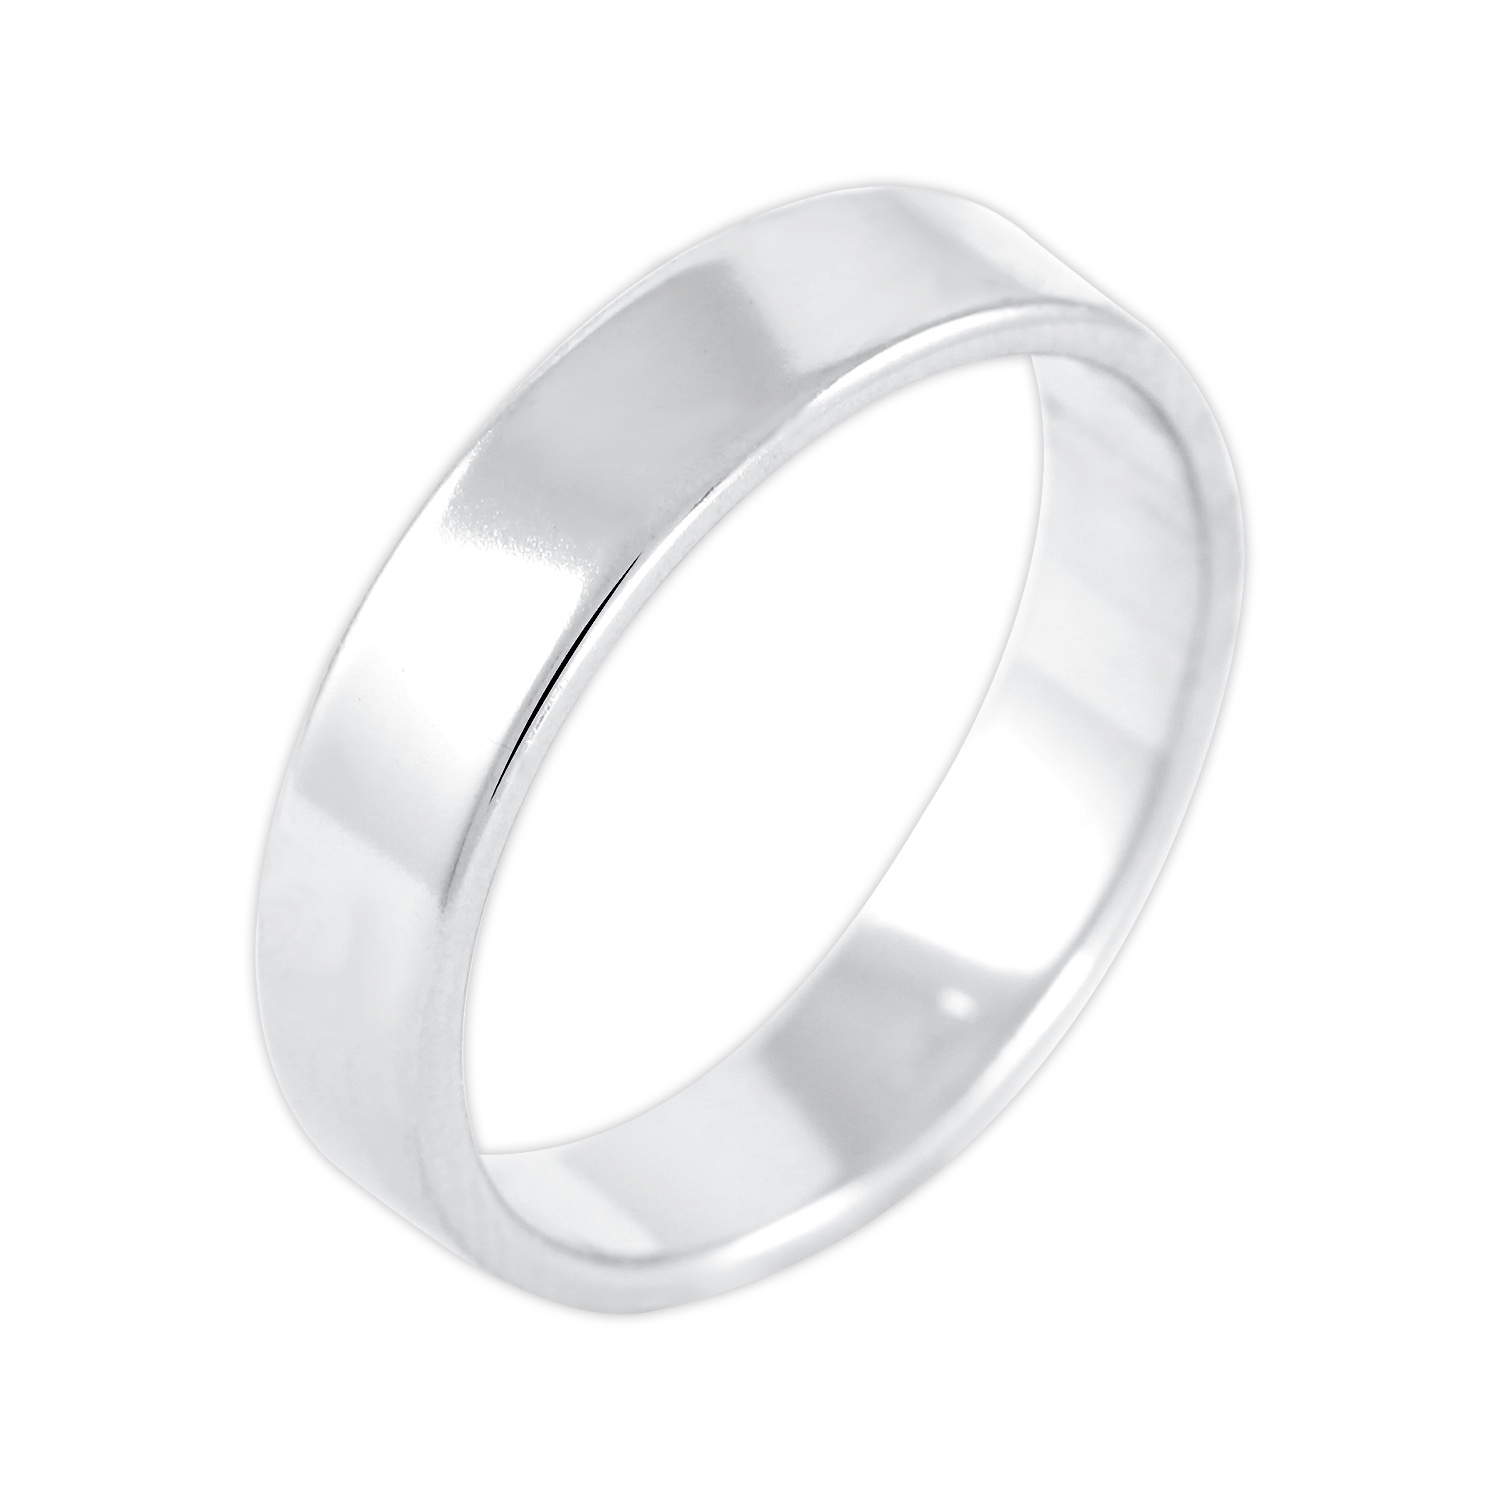 Brilio Silver Jemný stříbrný prsten 422 001 09069 04 49 mm